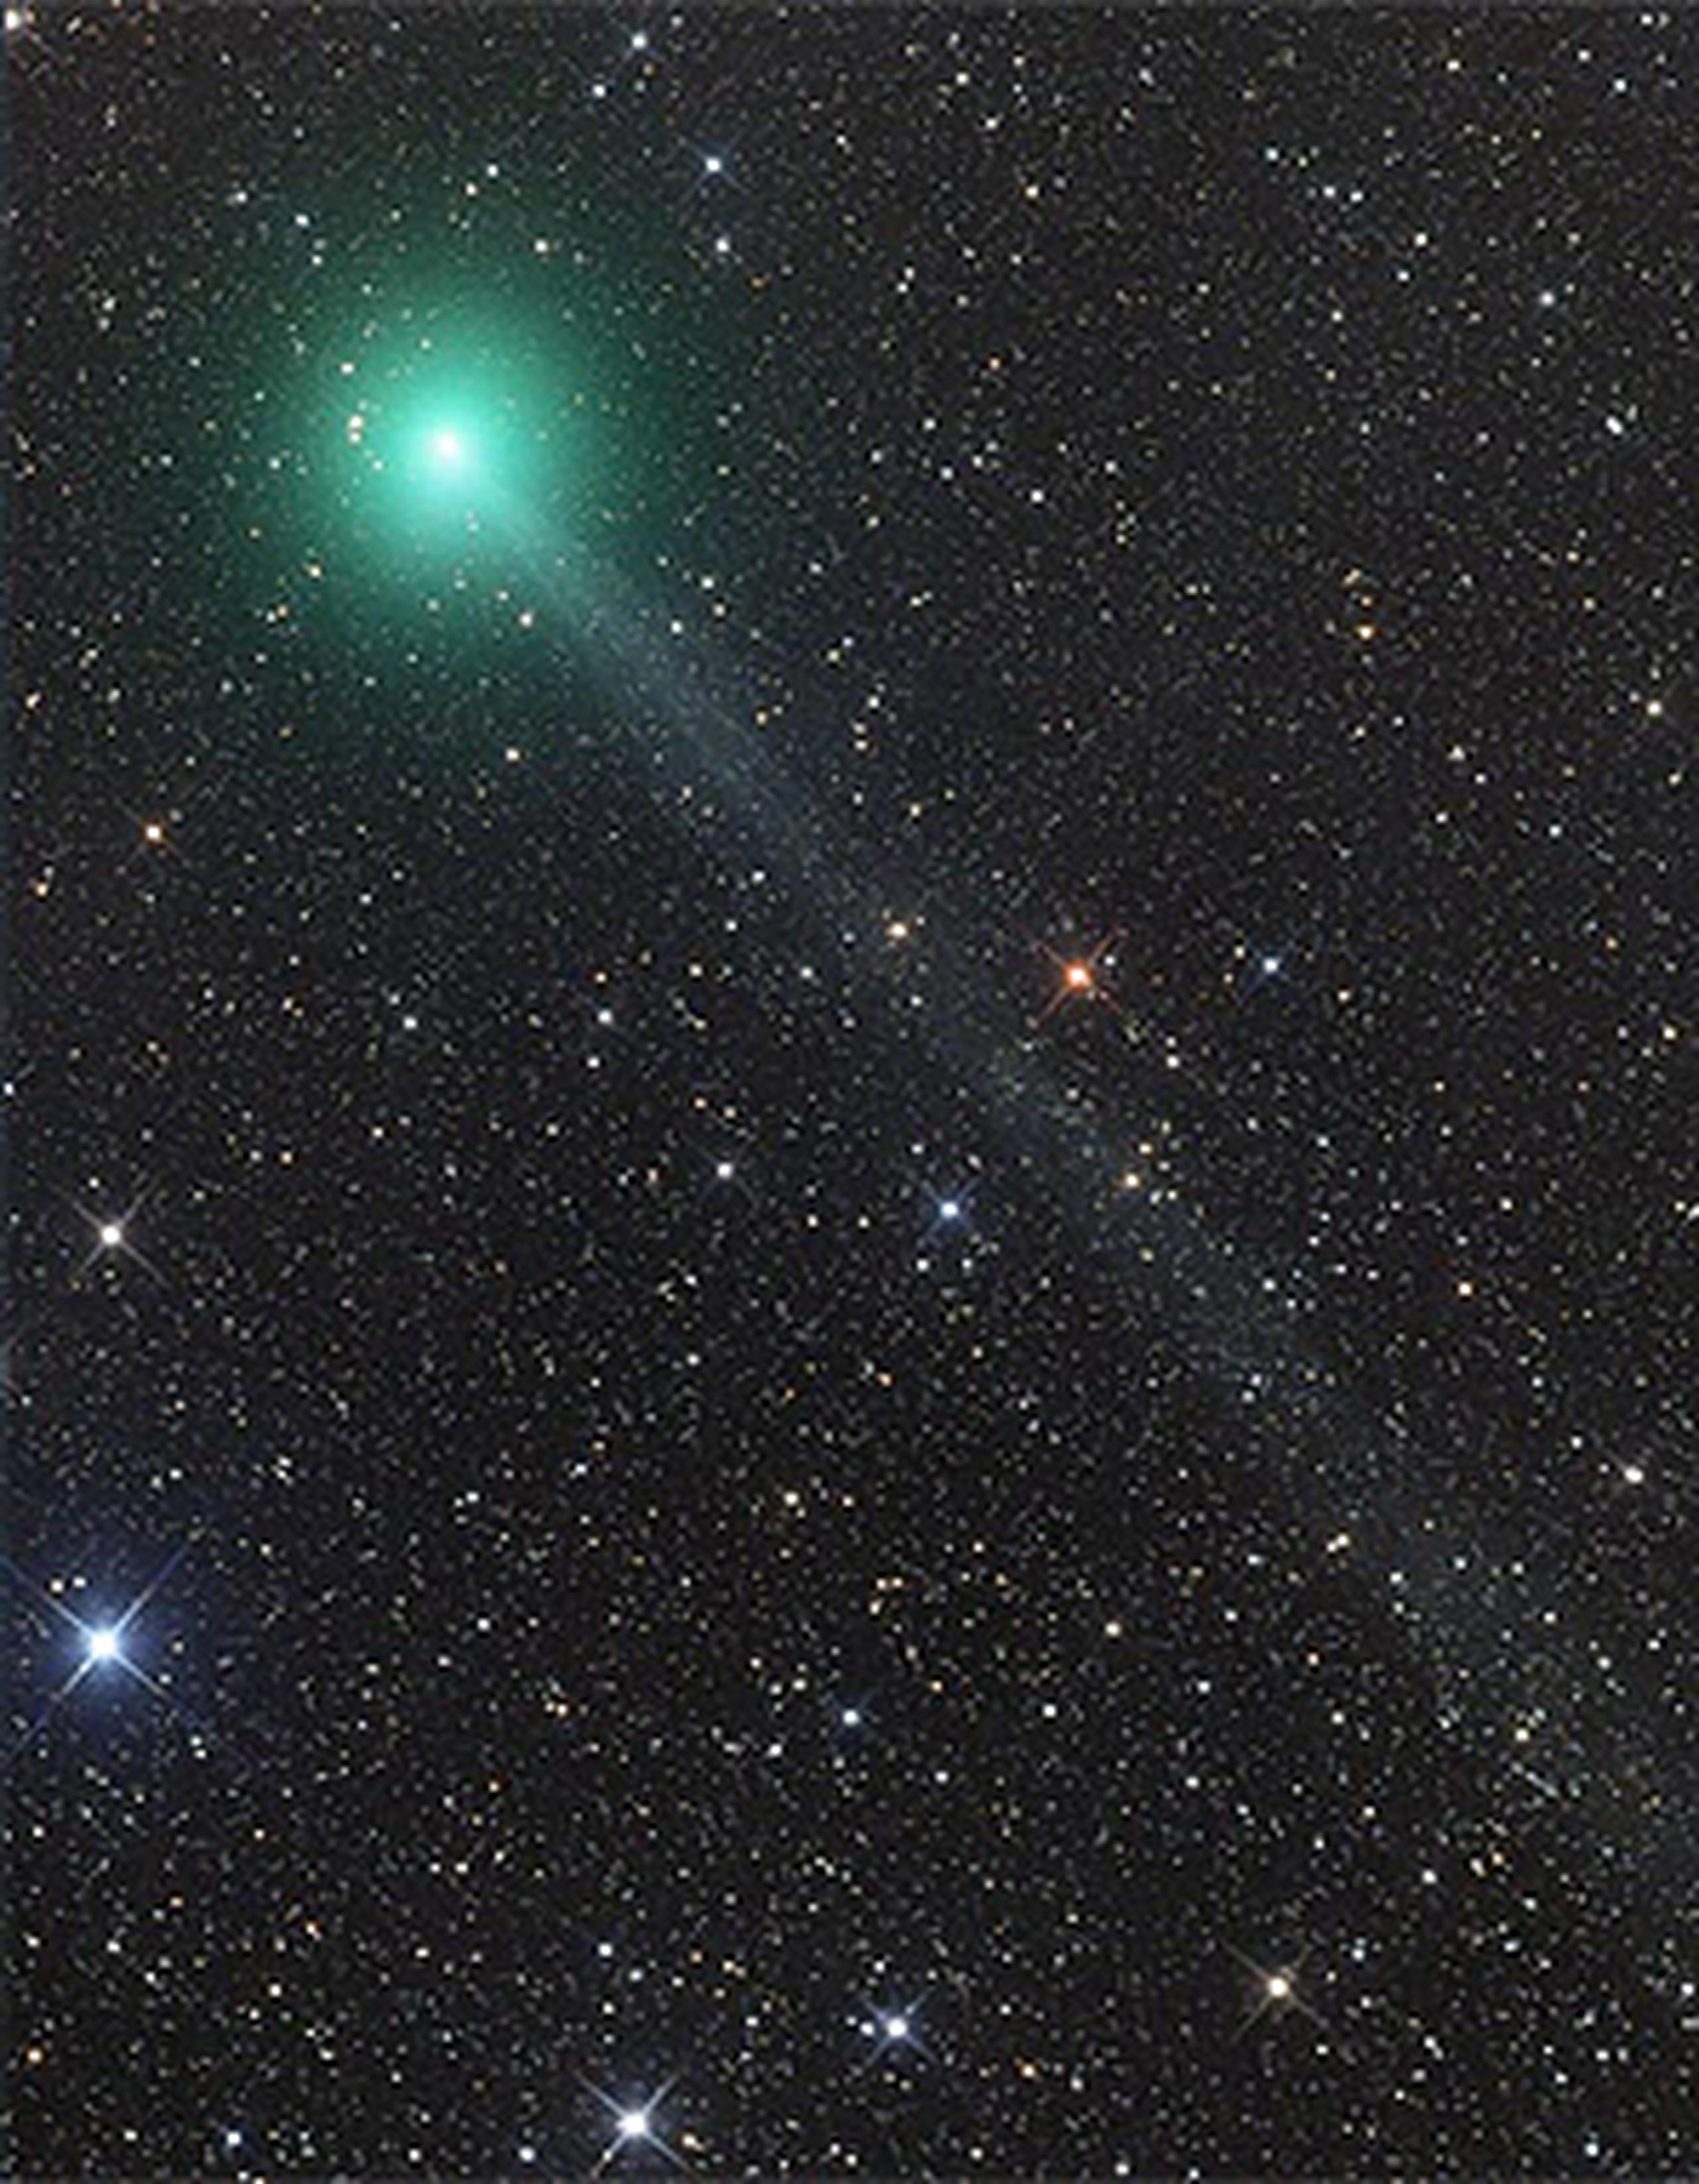 El cometa Lovejoy es uno de esos objetos astronómicos que se pueden observar durante un período una vez en la vida, pues este no regresará al interior del sistema solar por alrededor de 8,000 años.